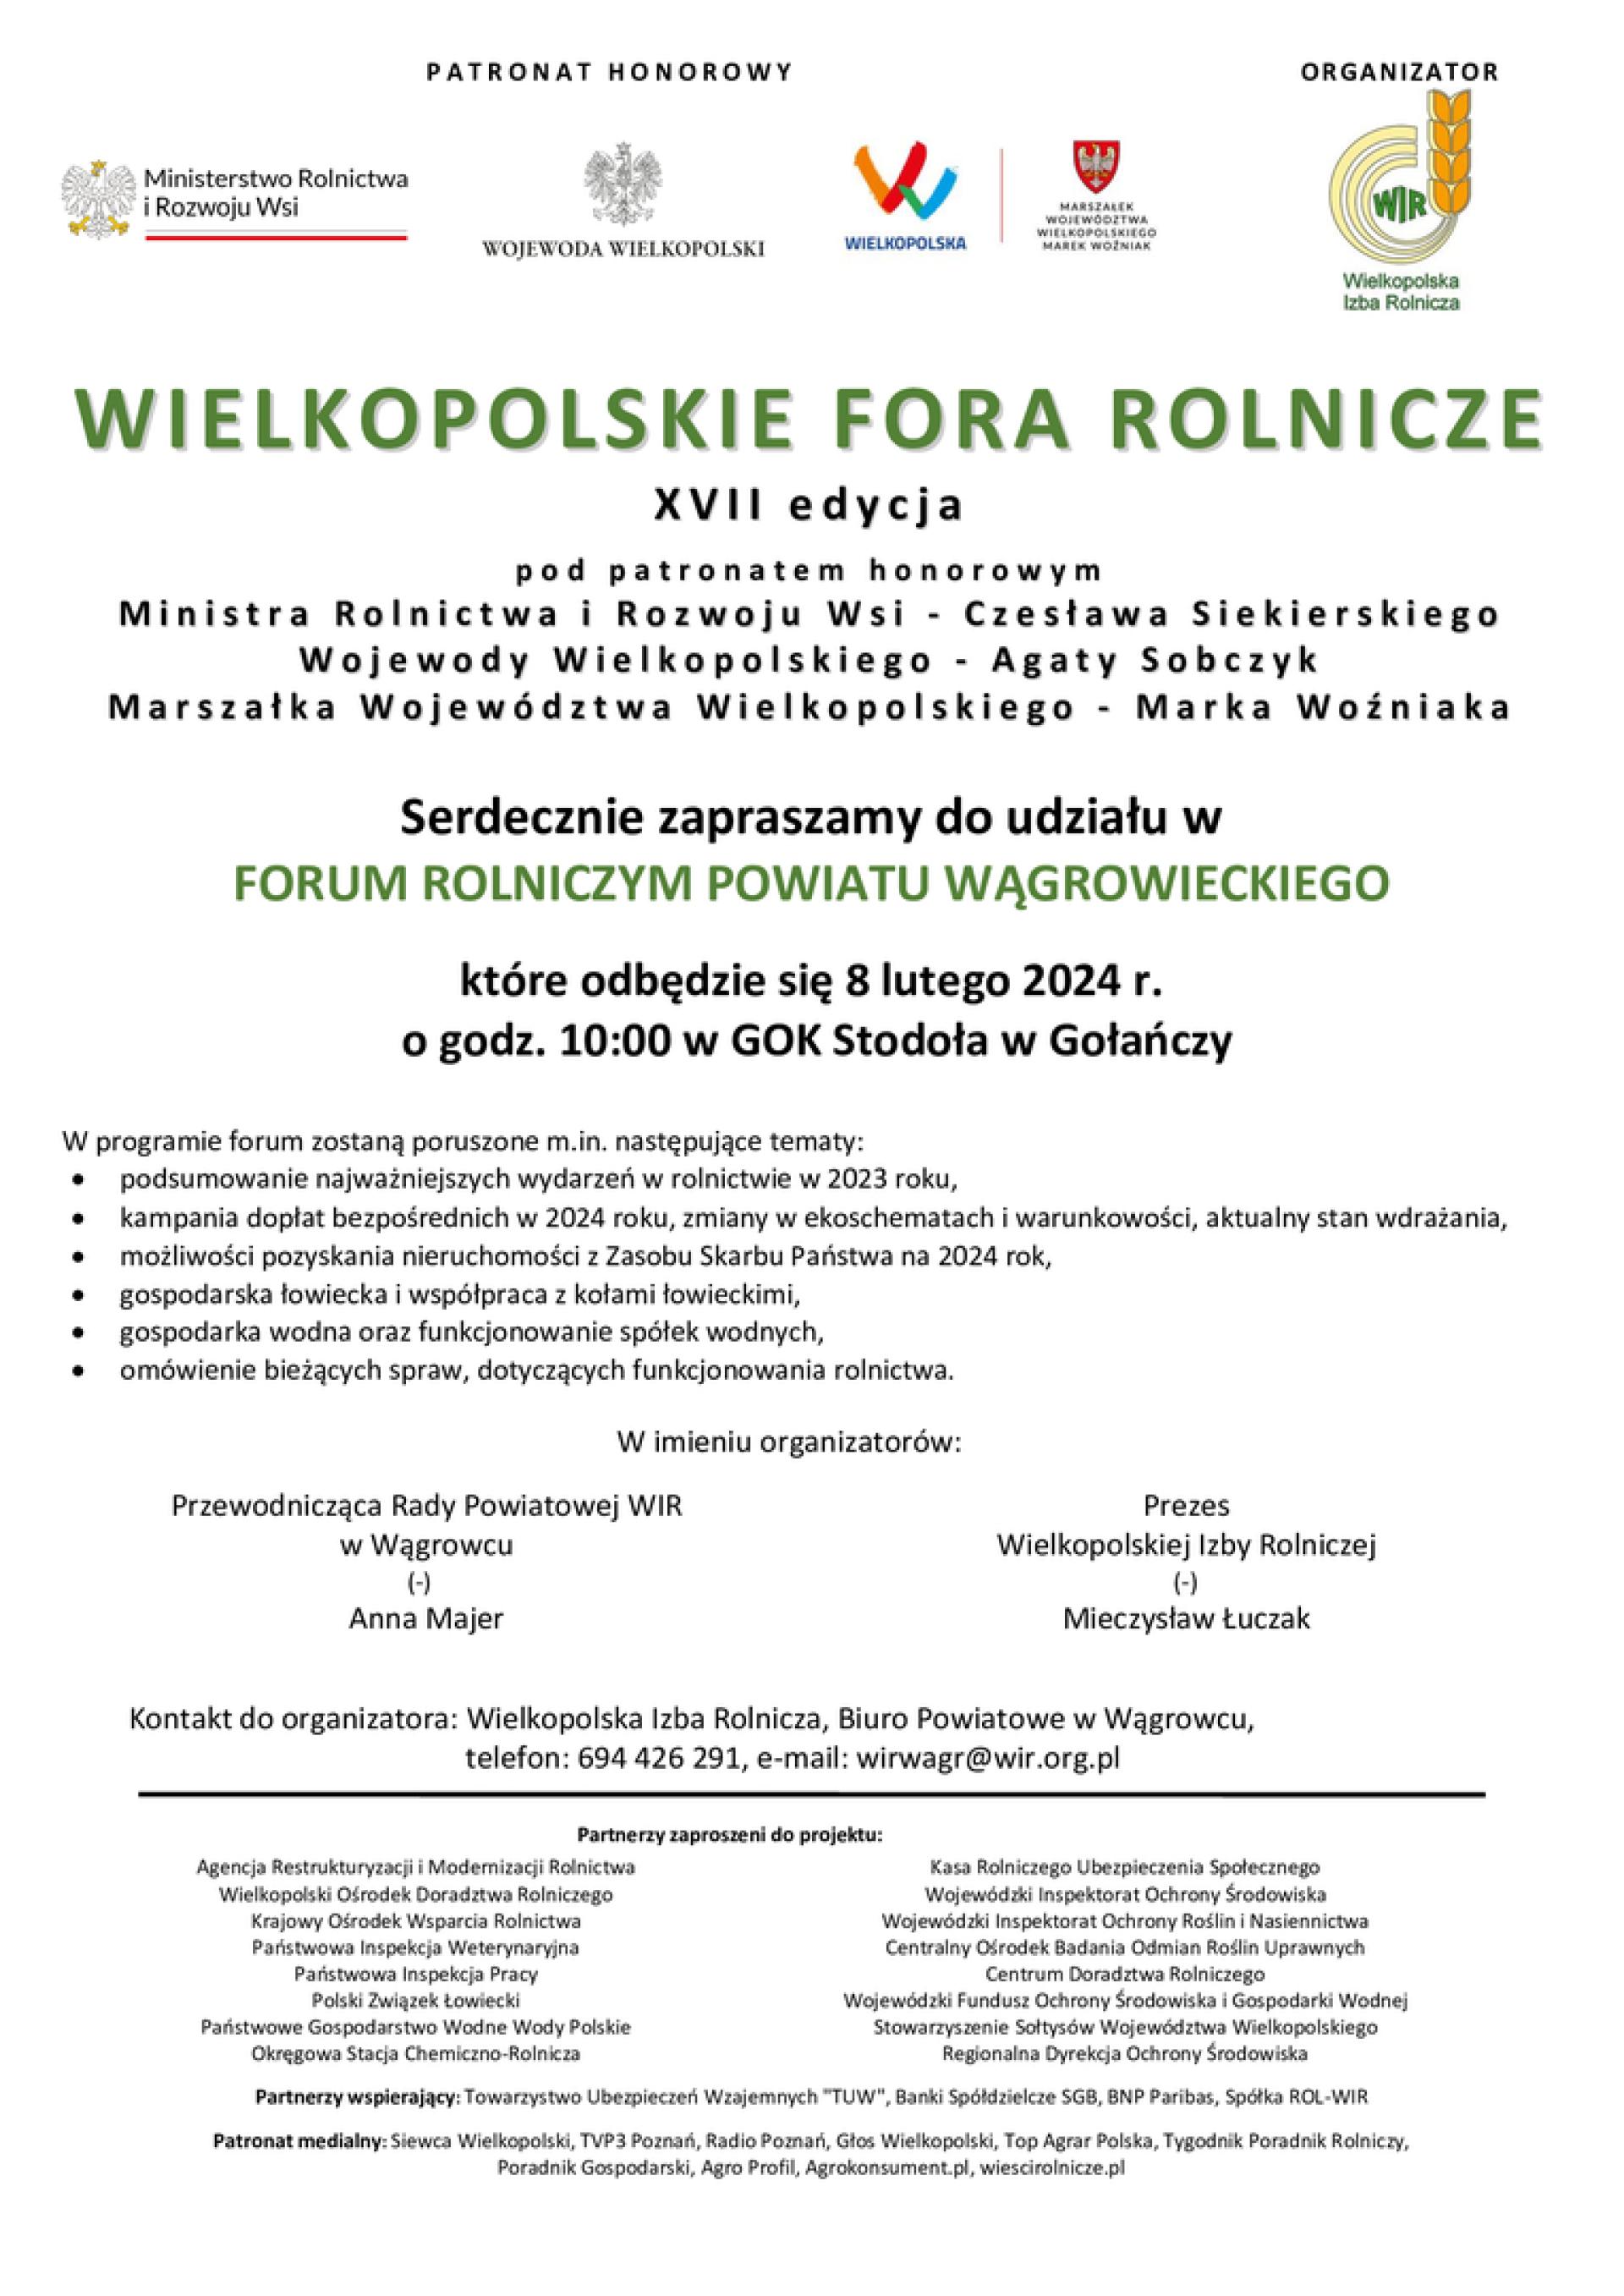 Forum Rolnicze Powiatu Wągrowieckiego